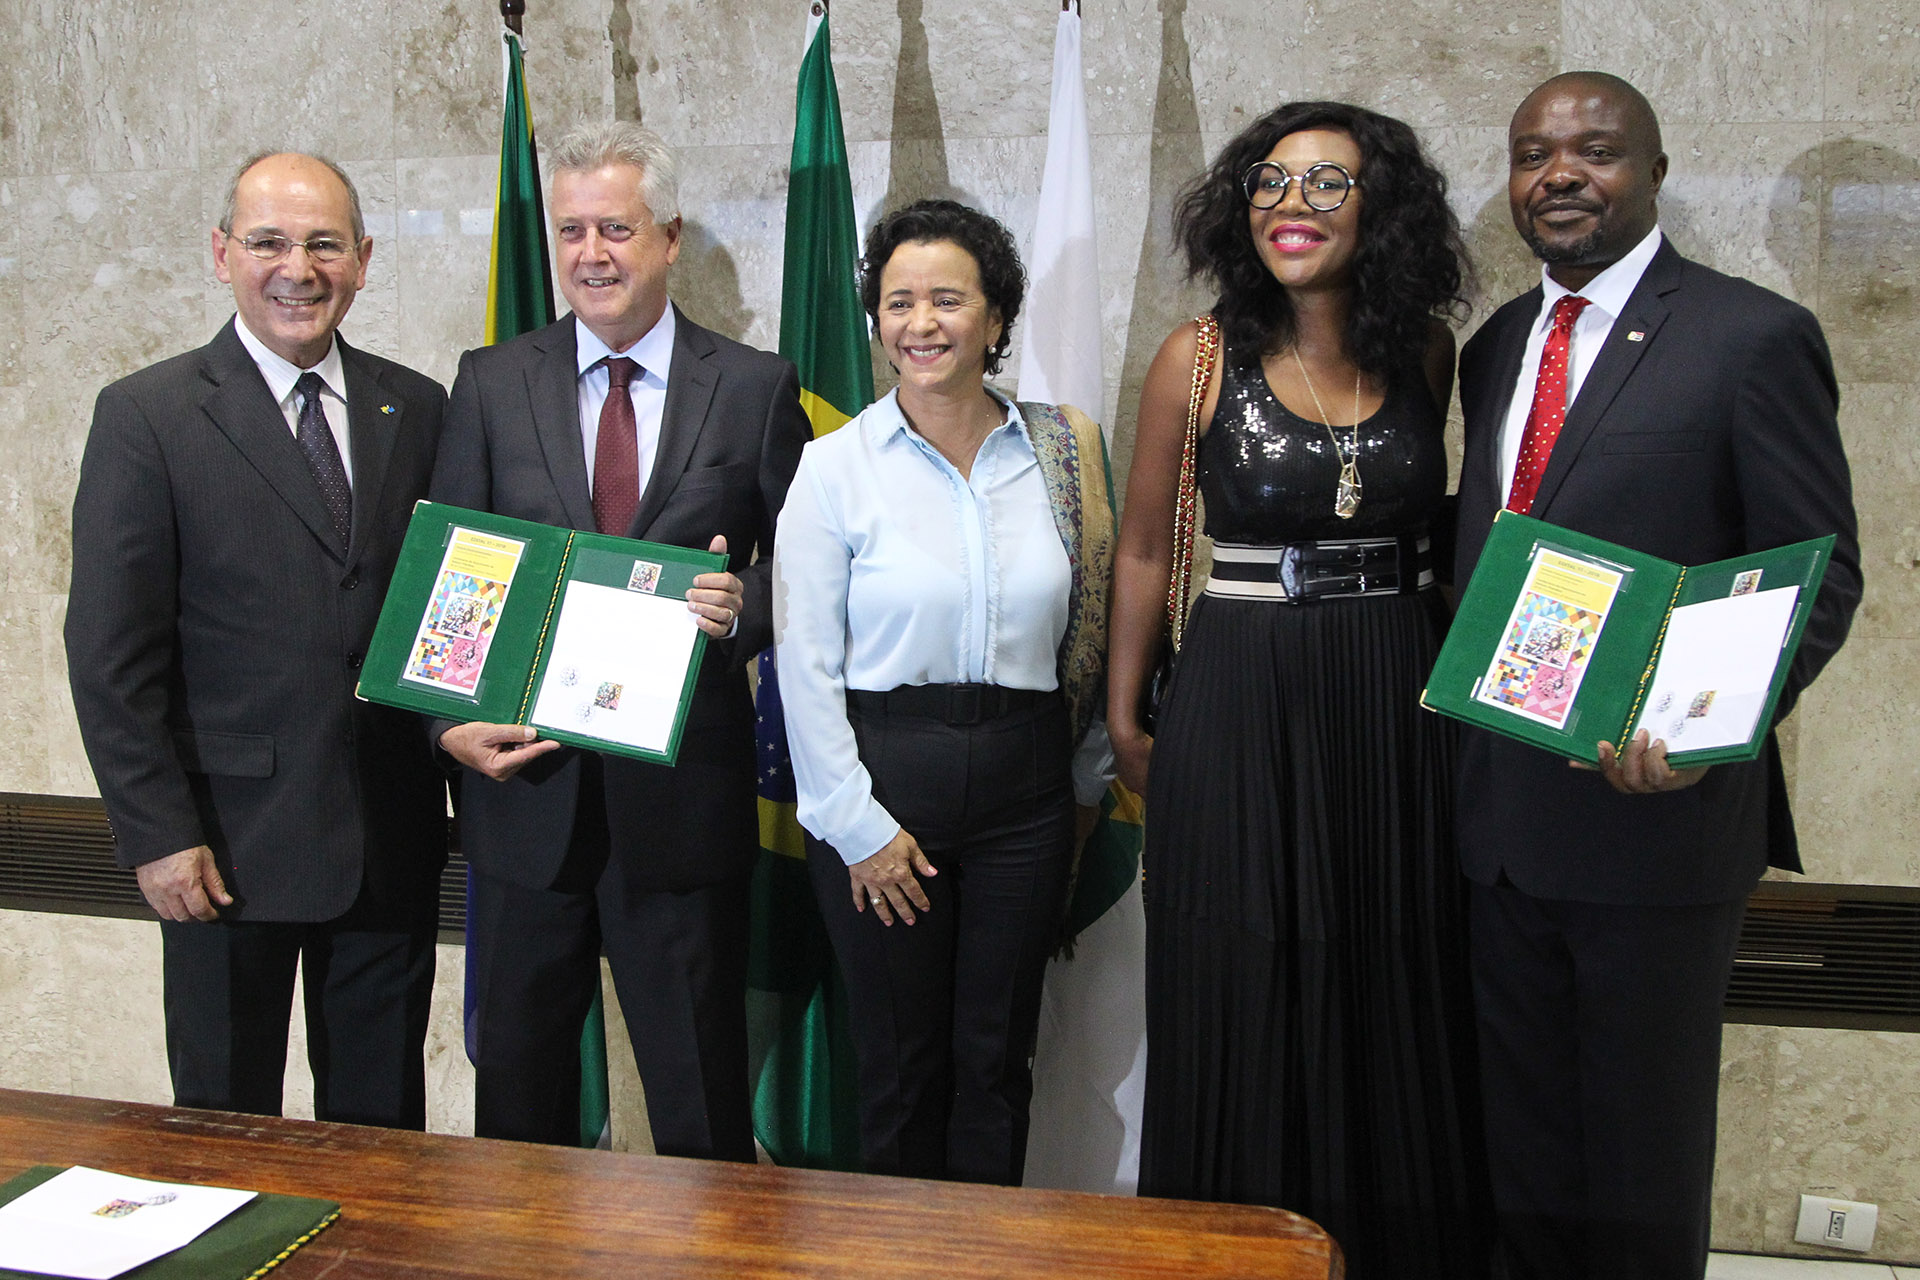 O selo comemorativo do centenário de nascimento de Nelson Mandela foi lançado nesta segunda-feira (10) no Salão Branco do Palácio do Buriti. A homenagem é uma parceria da Embaixada da África do Sul com os Correios e o governo de Brasília.